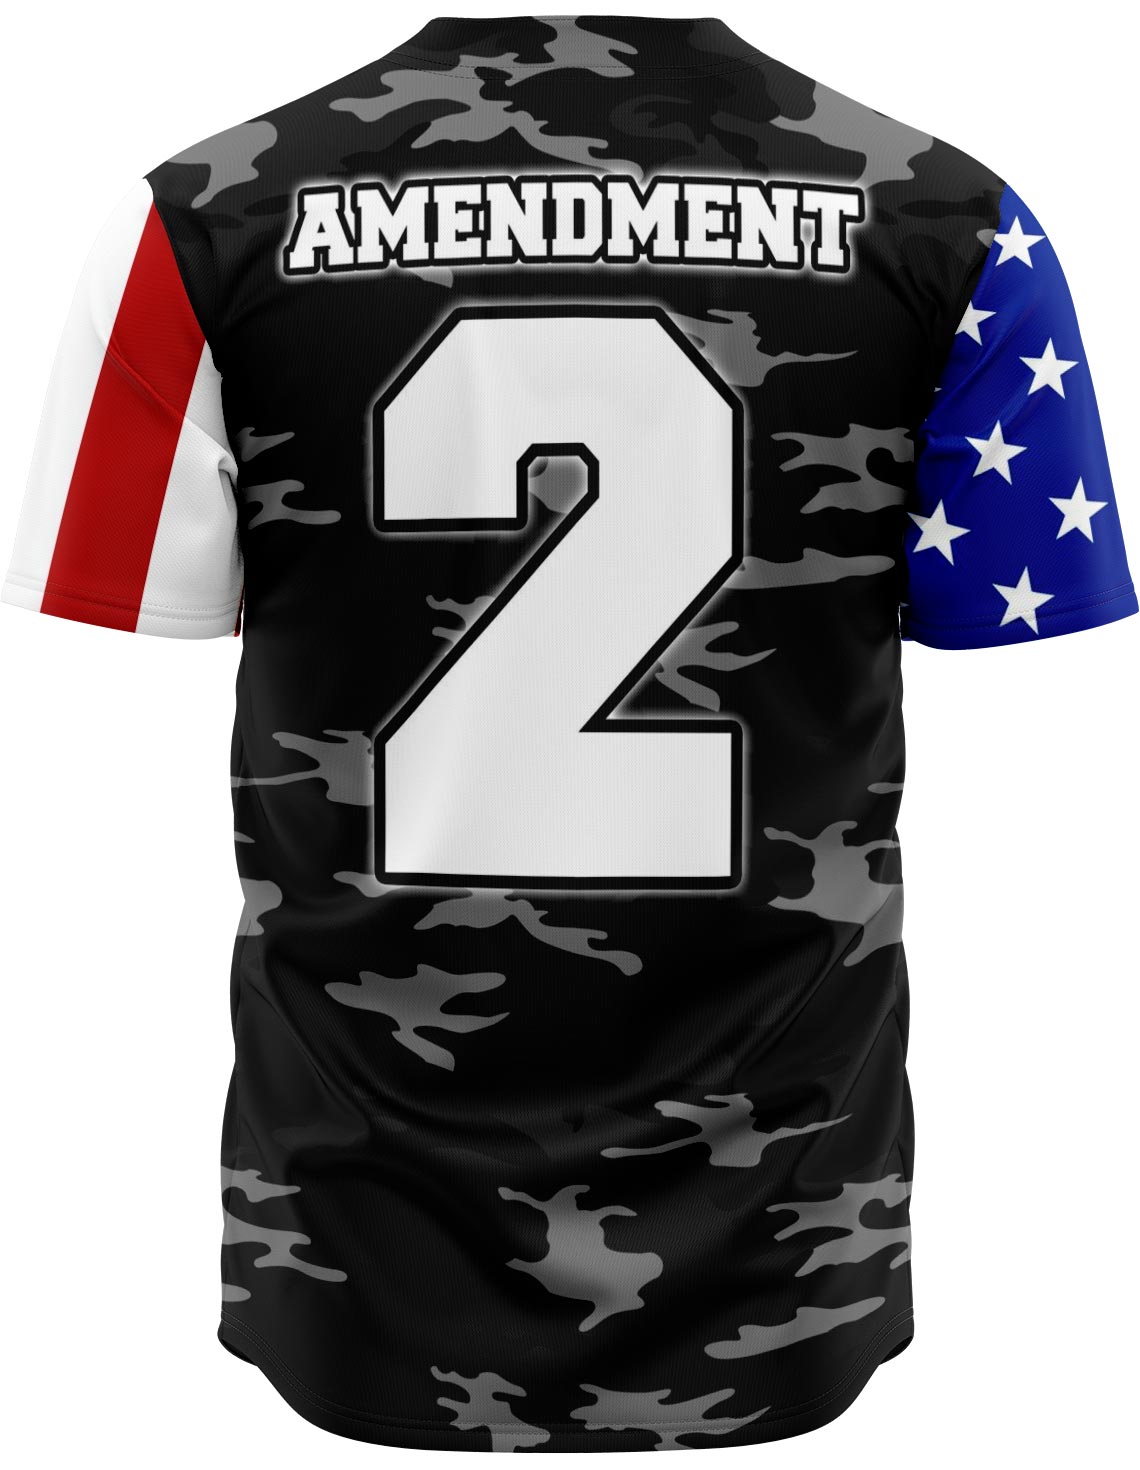 2nd amendment baseball jersey